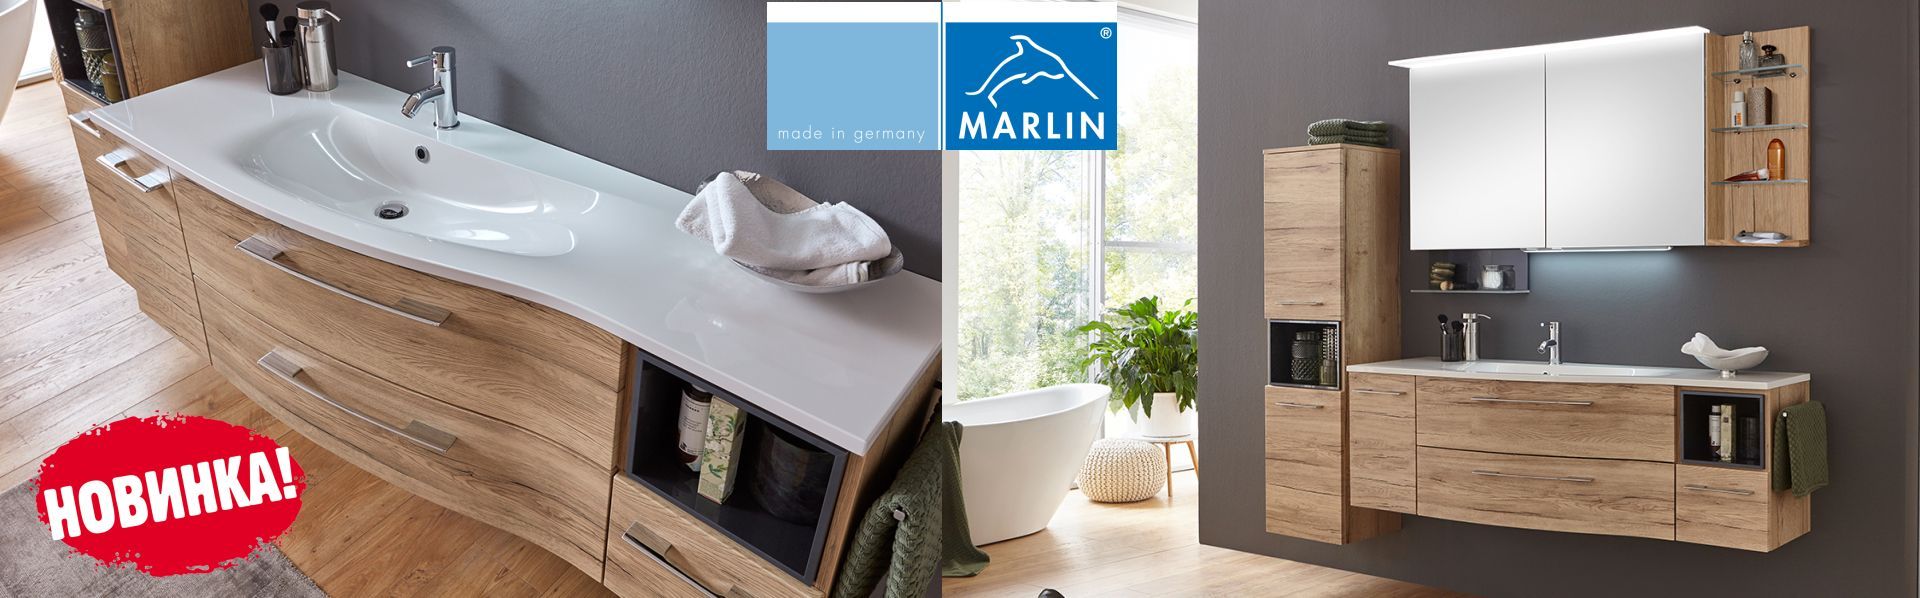 Мебель для ванной Marlin